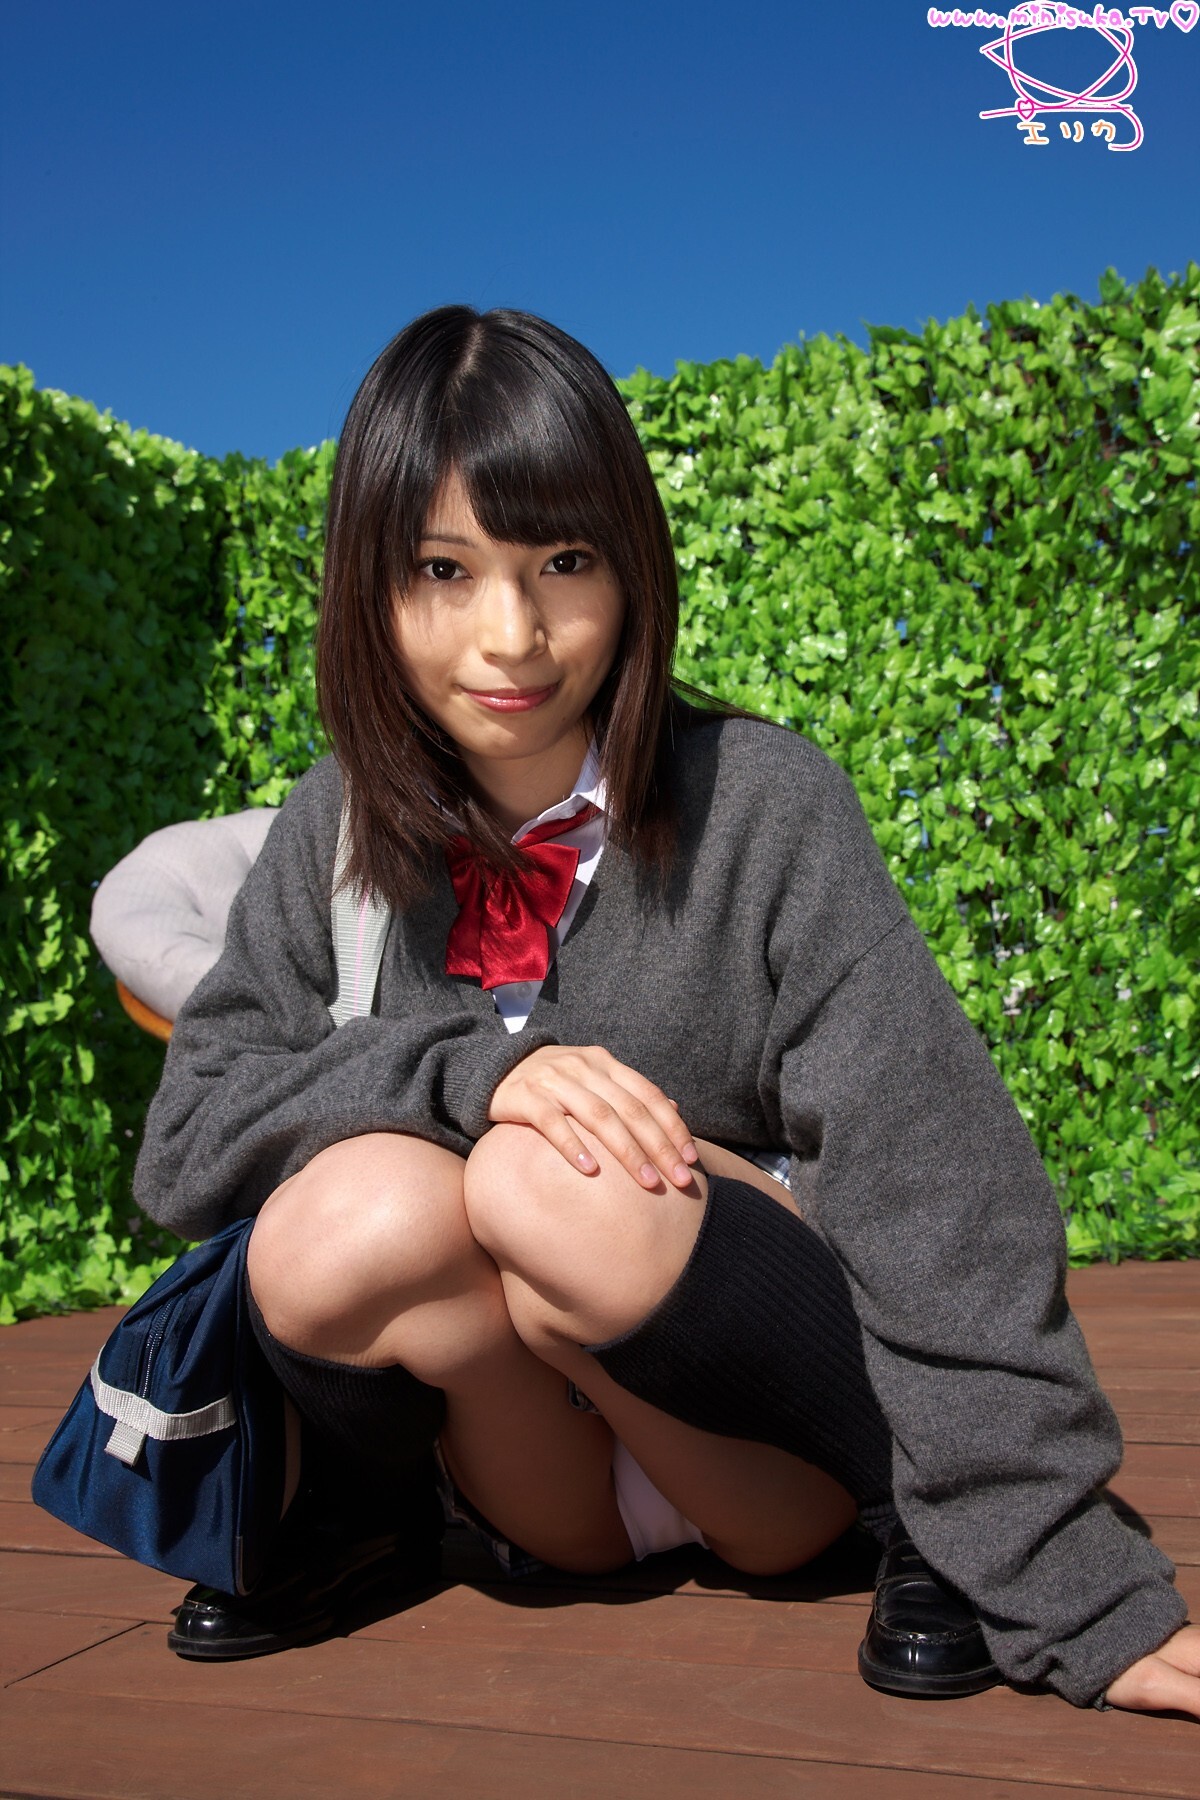 Erika Erika (1) Minisuka. TV Women's high school girl